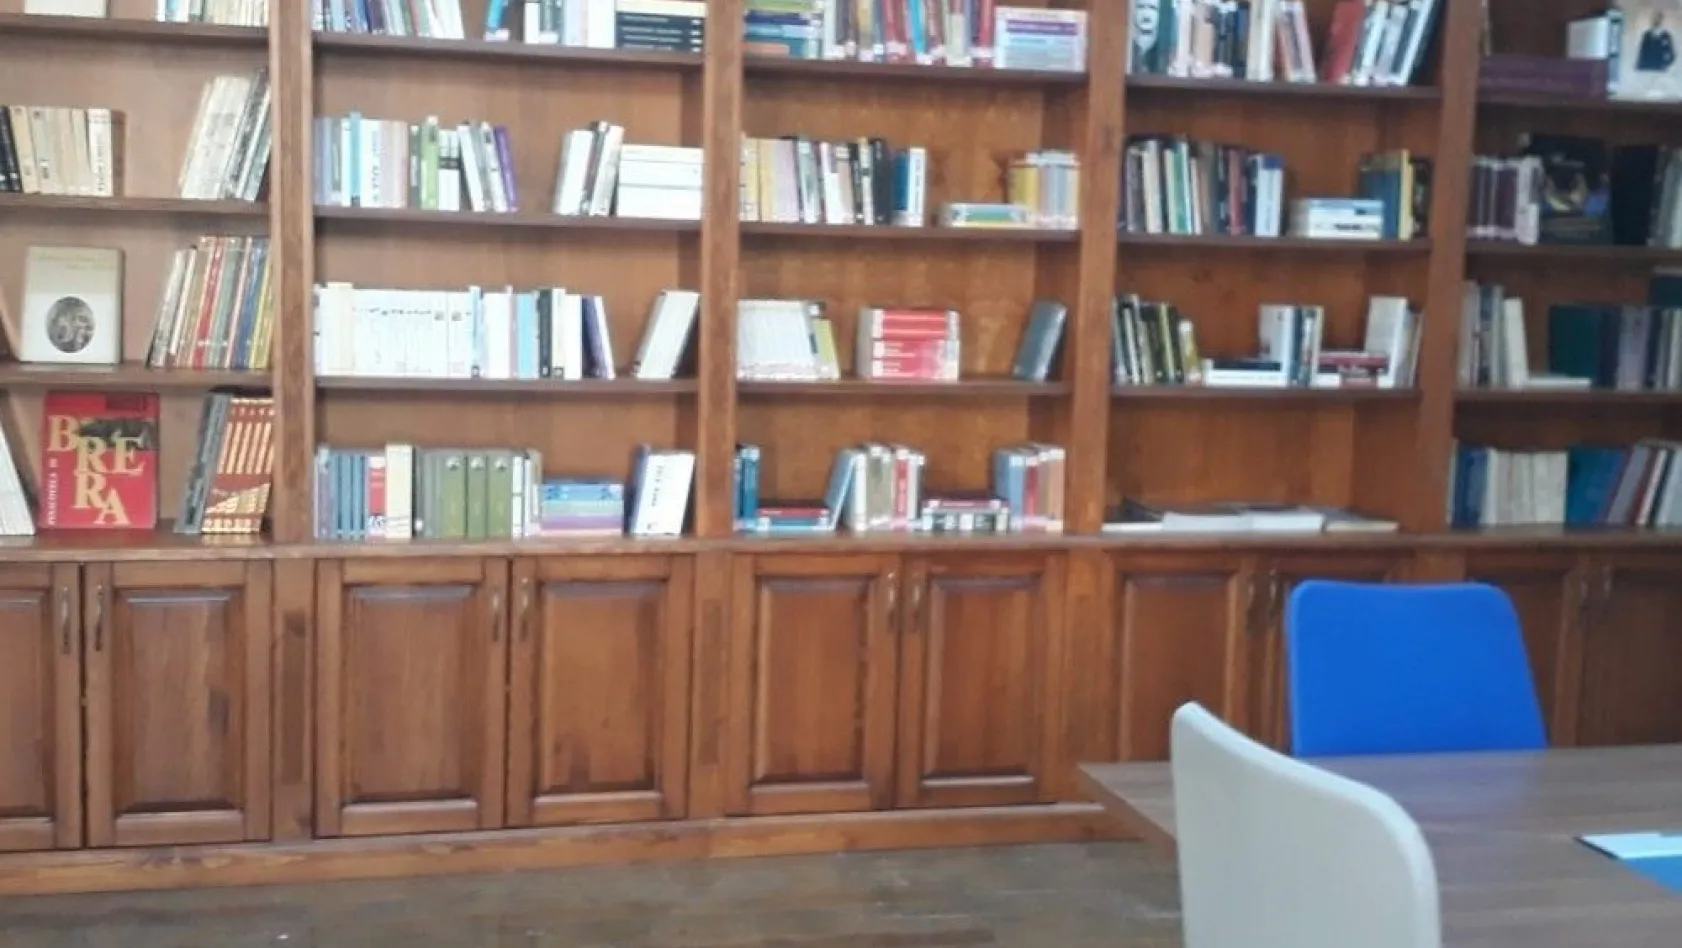 İlk Sanat ve Edebiyat Kütüphanesi Kongre Binası'nda hizmete açıldı
